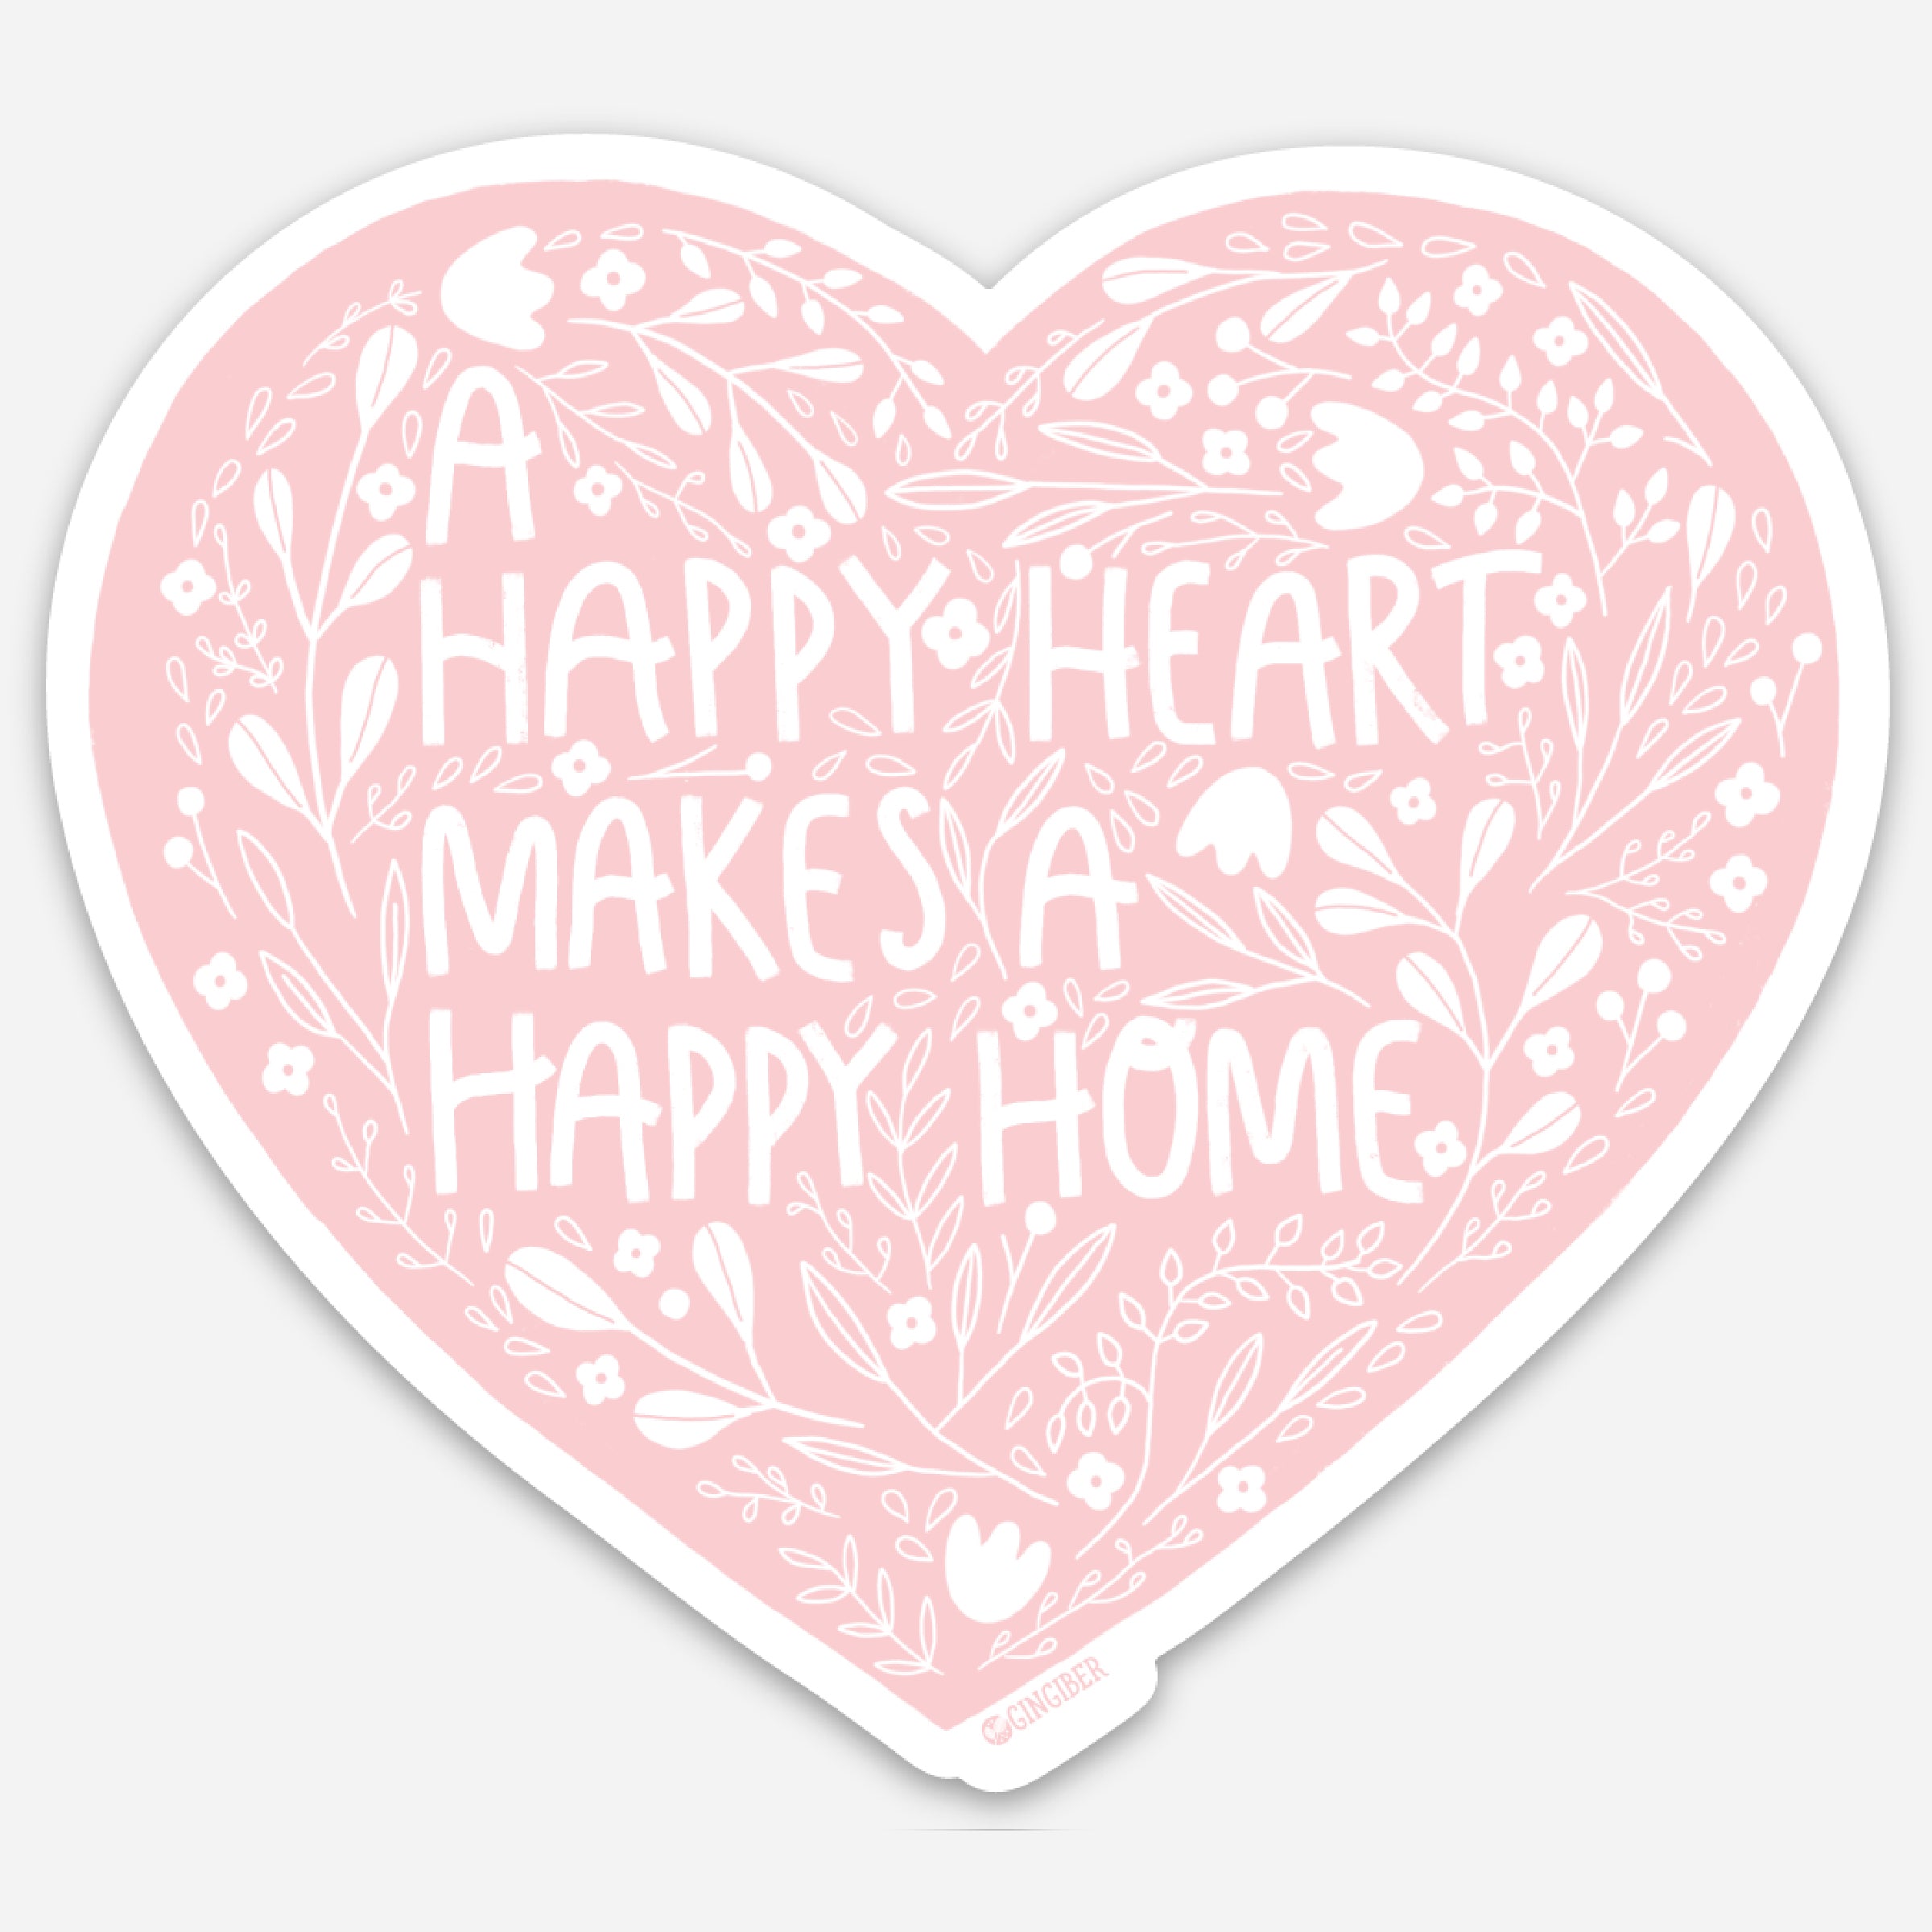 Sticker Sheet Happy Heart